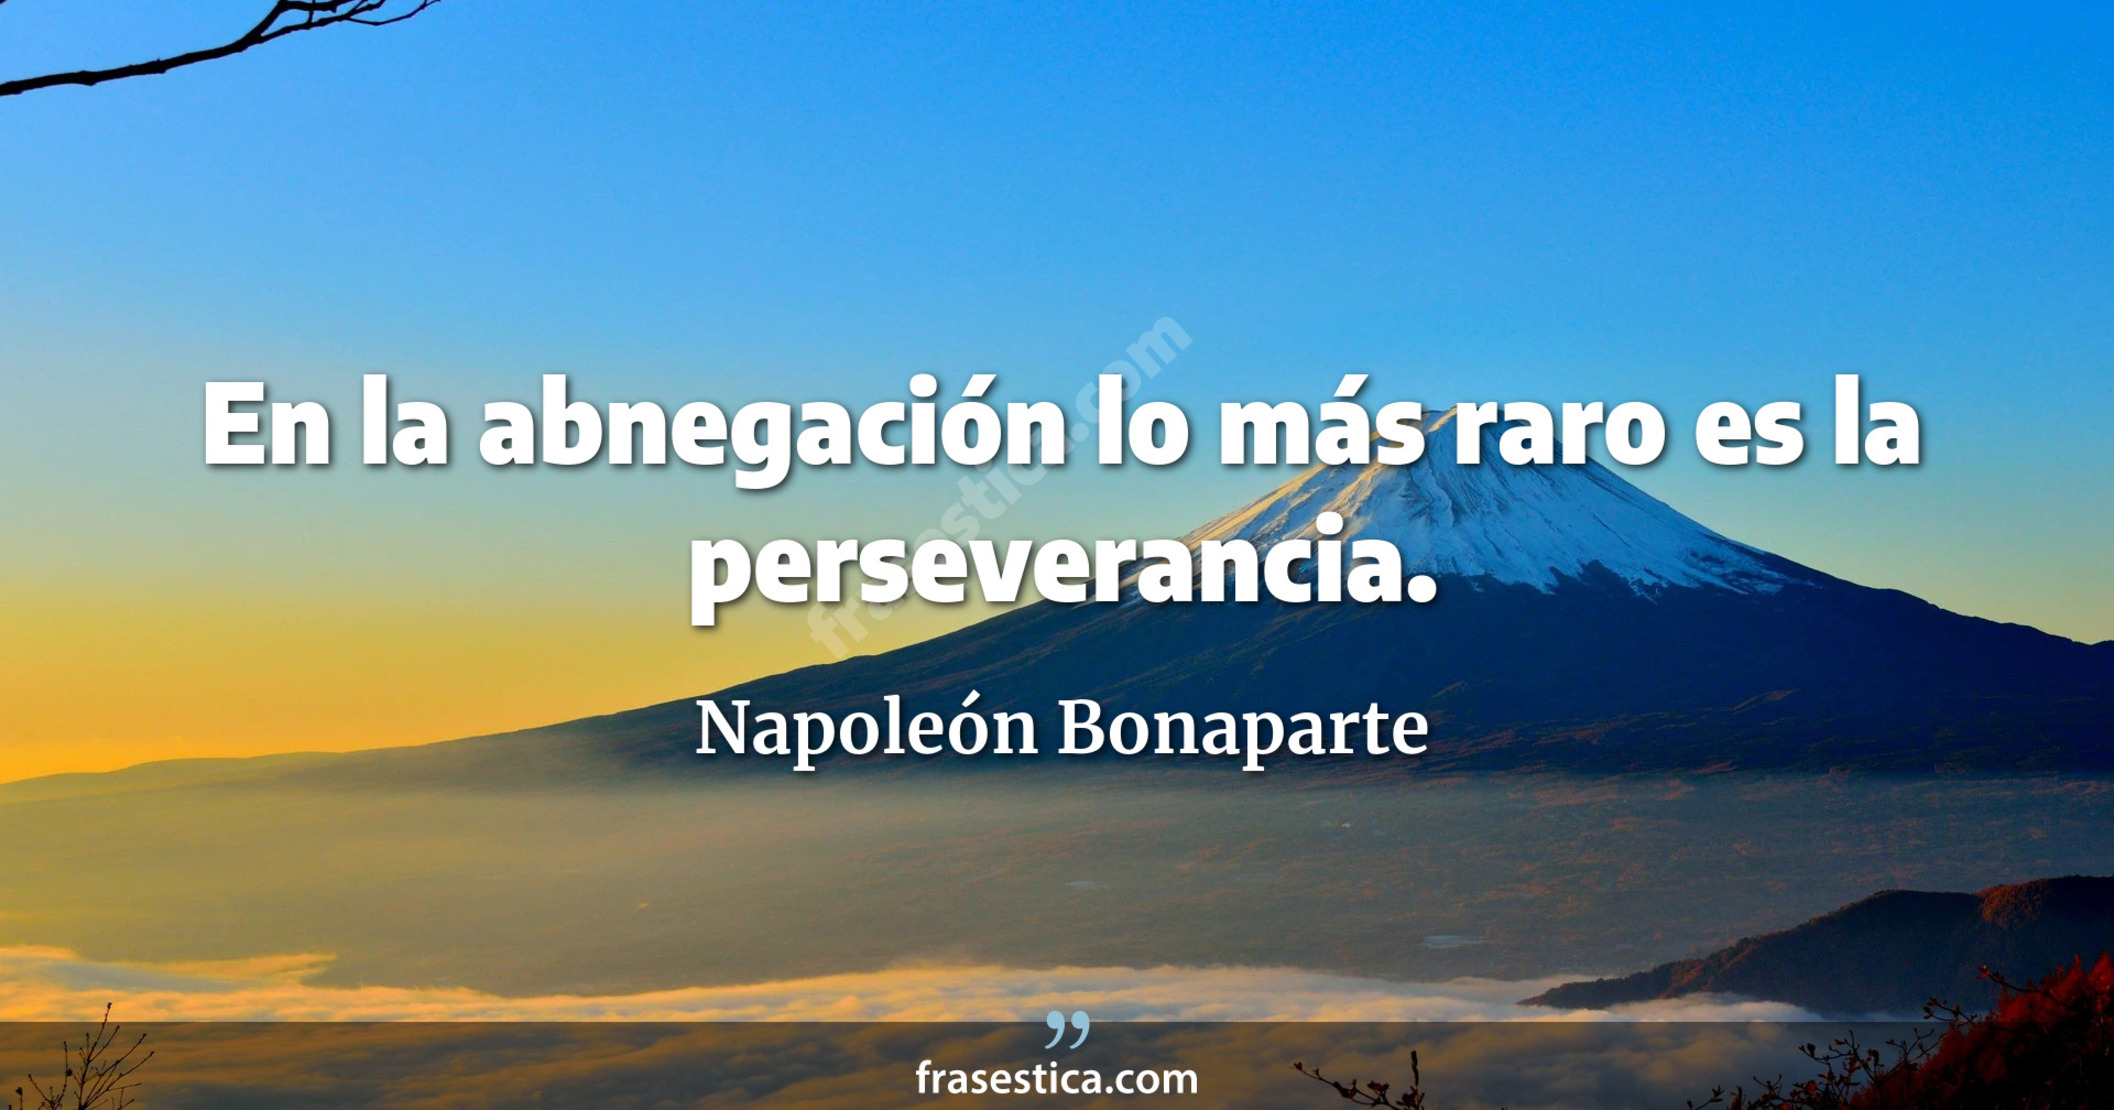 En la abnegación lo más raro es la perseverancia. - Napoleón Bonaparte